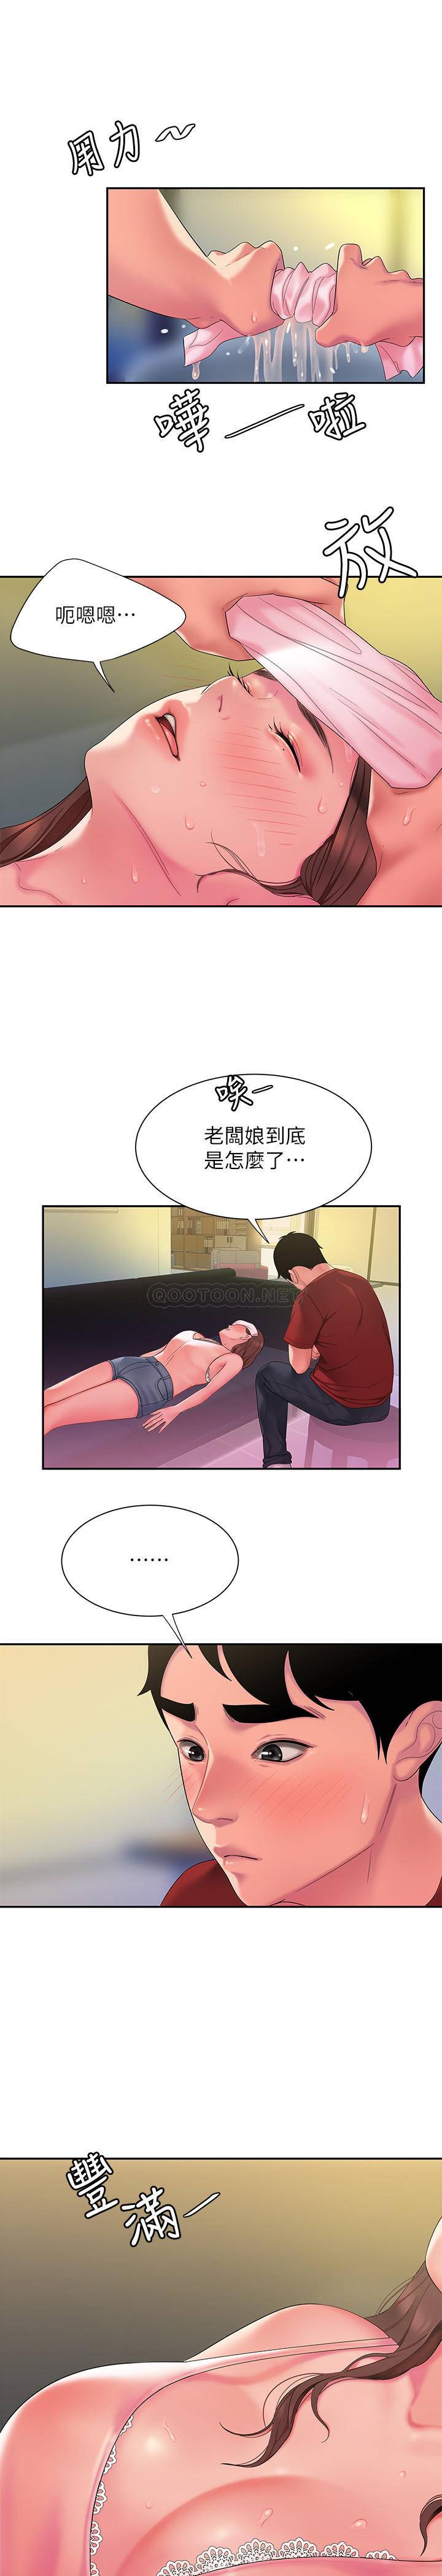 韩国污漫画 幸福外送員 第40话 22